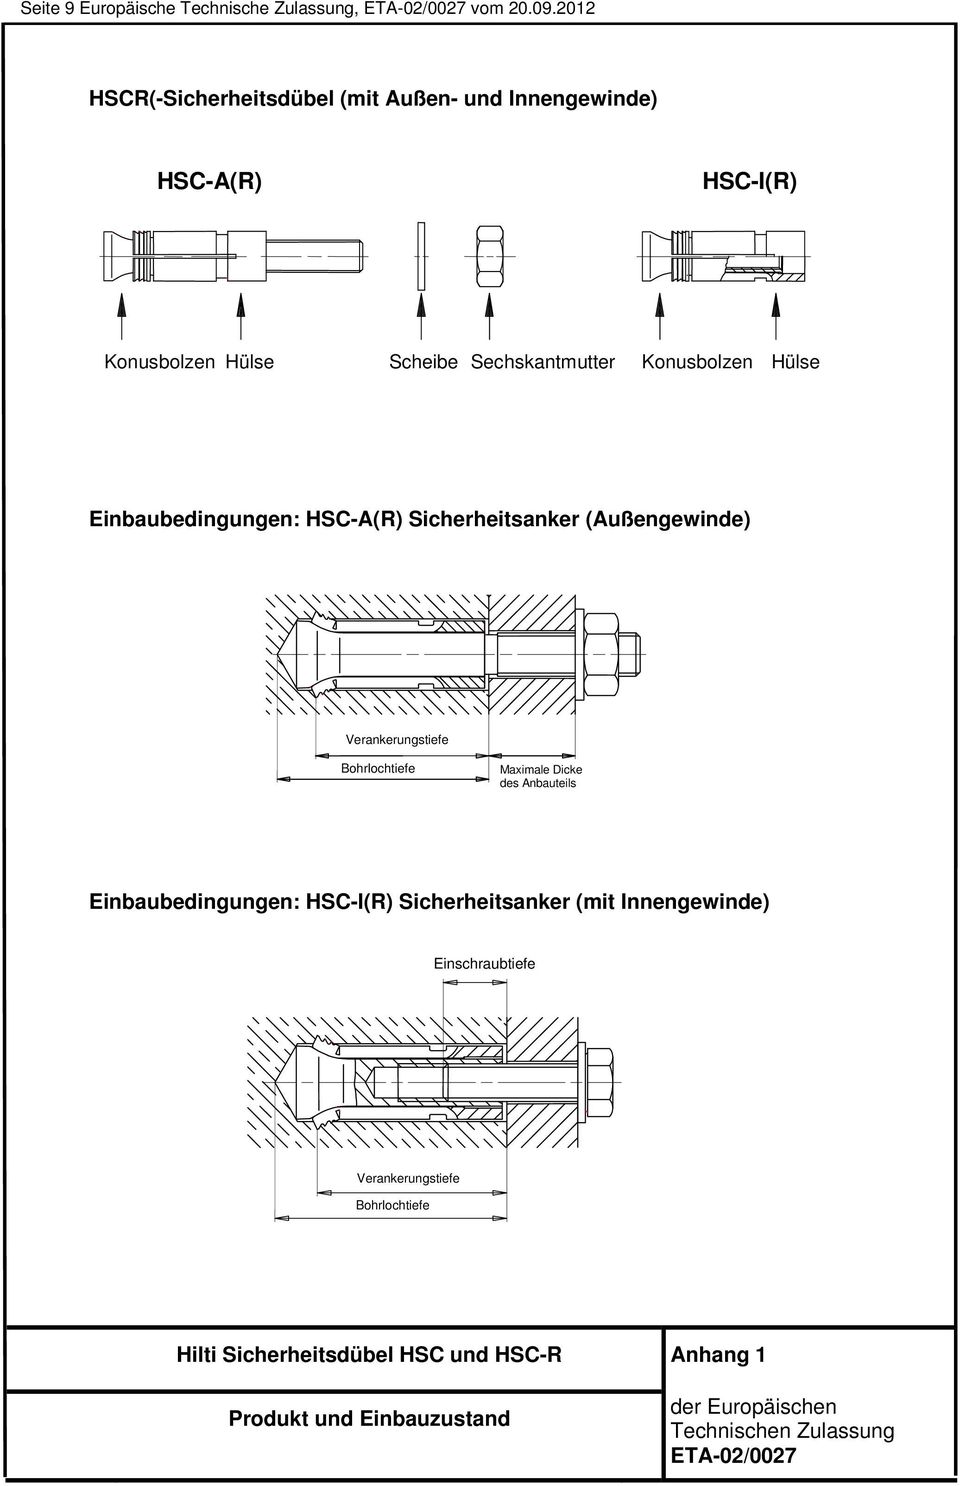 Konusbolzen Hülse Einbaubedingungen: HSC-A(R) Sicherheitsanker (Außengewinde) Verankerungstiefe Bohrlochtiefe Maximale